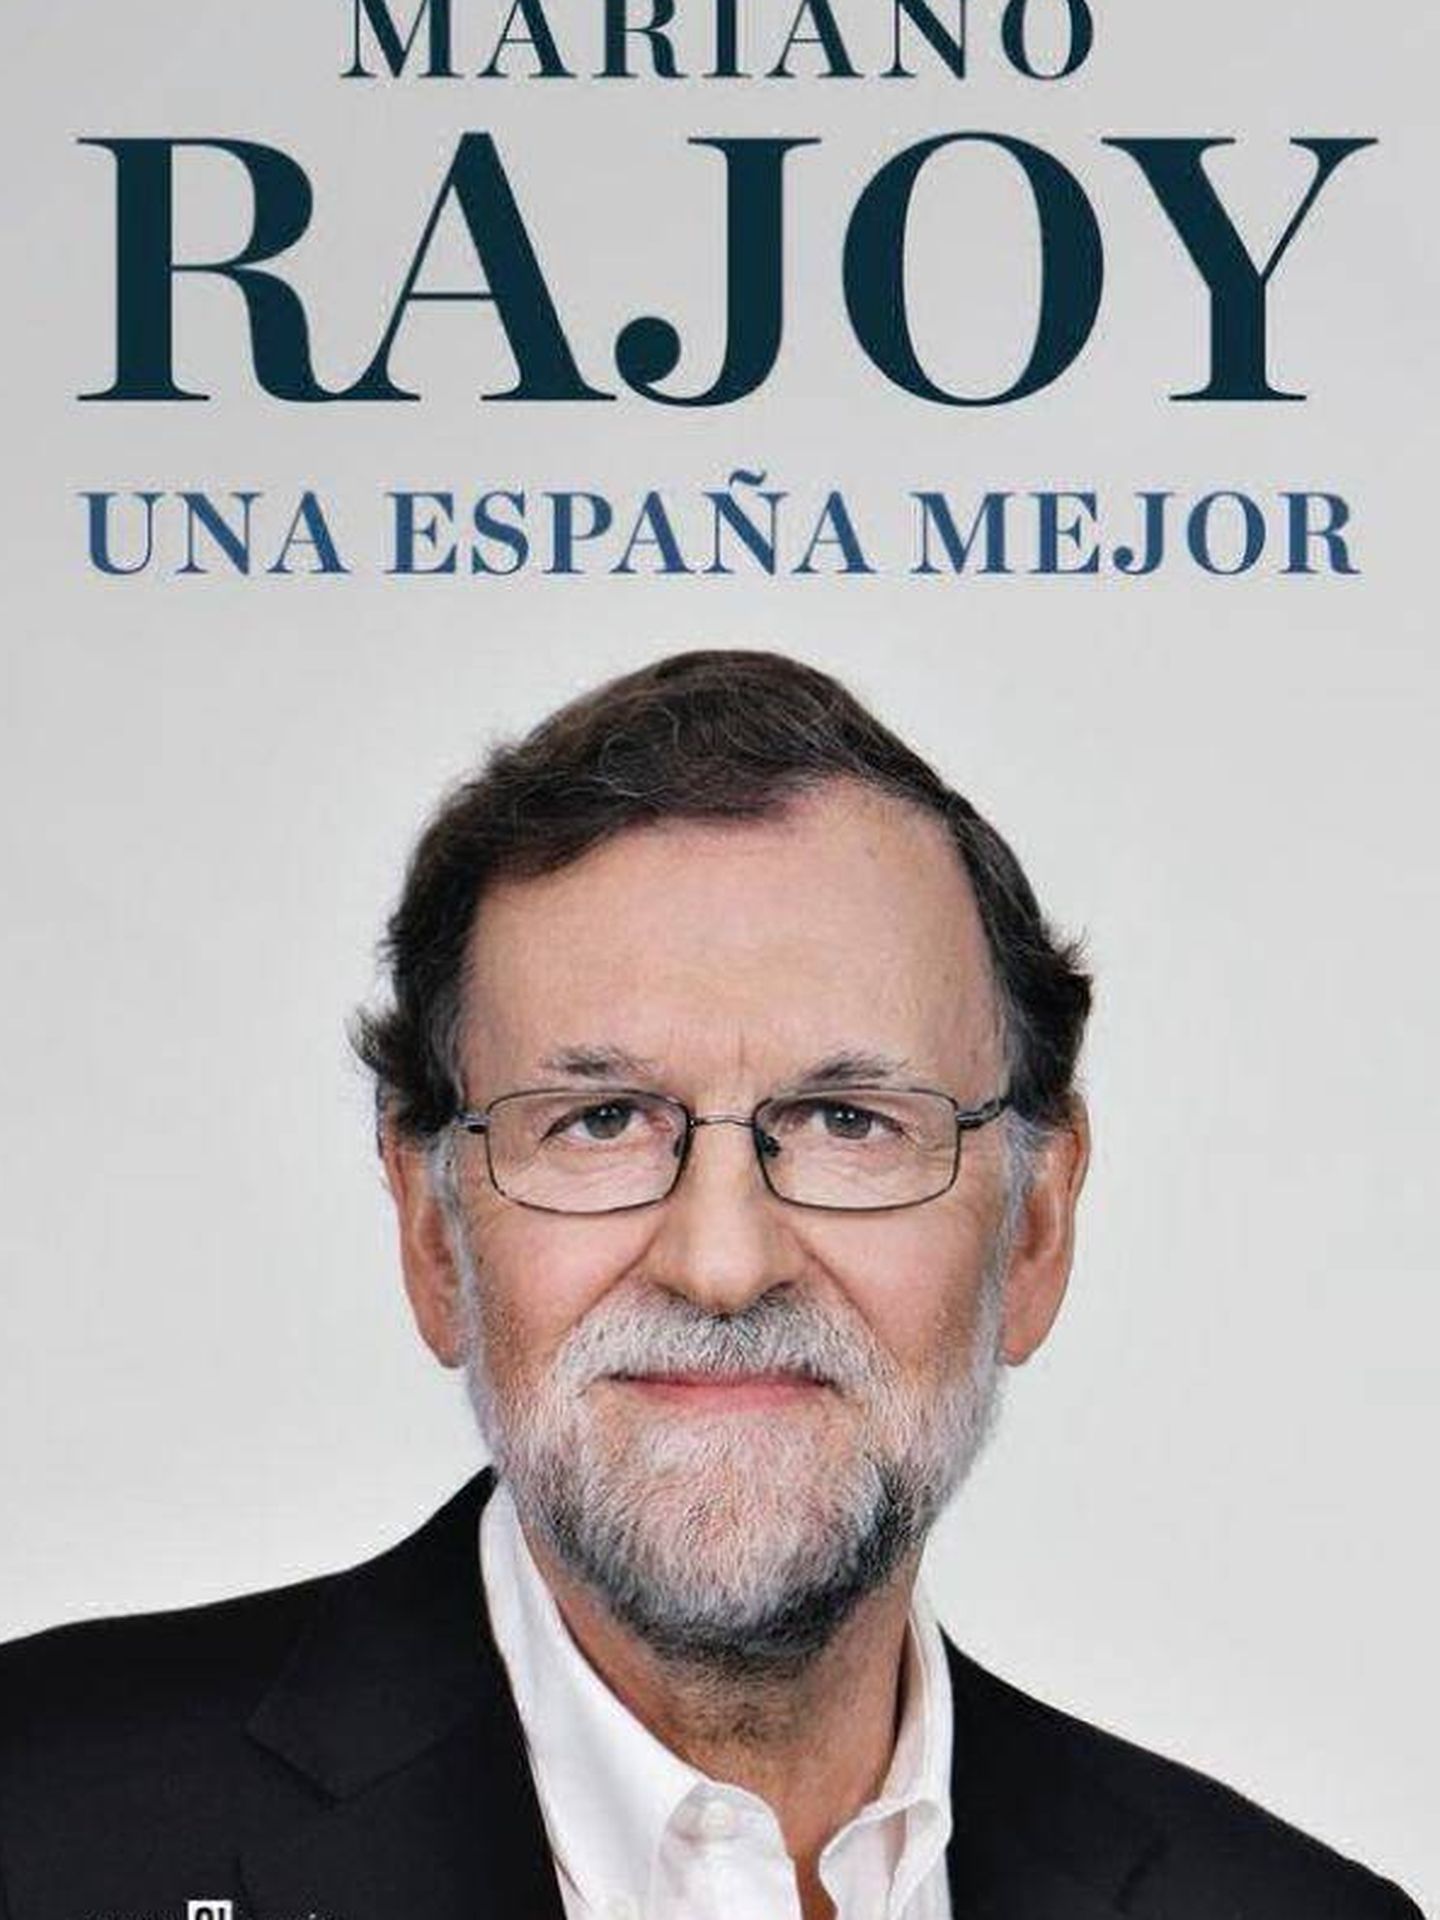 Portada del libro de Mariano Rajoy.